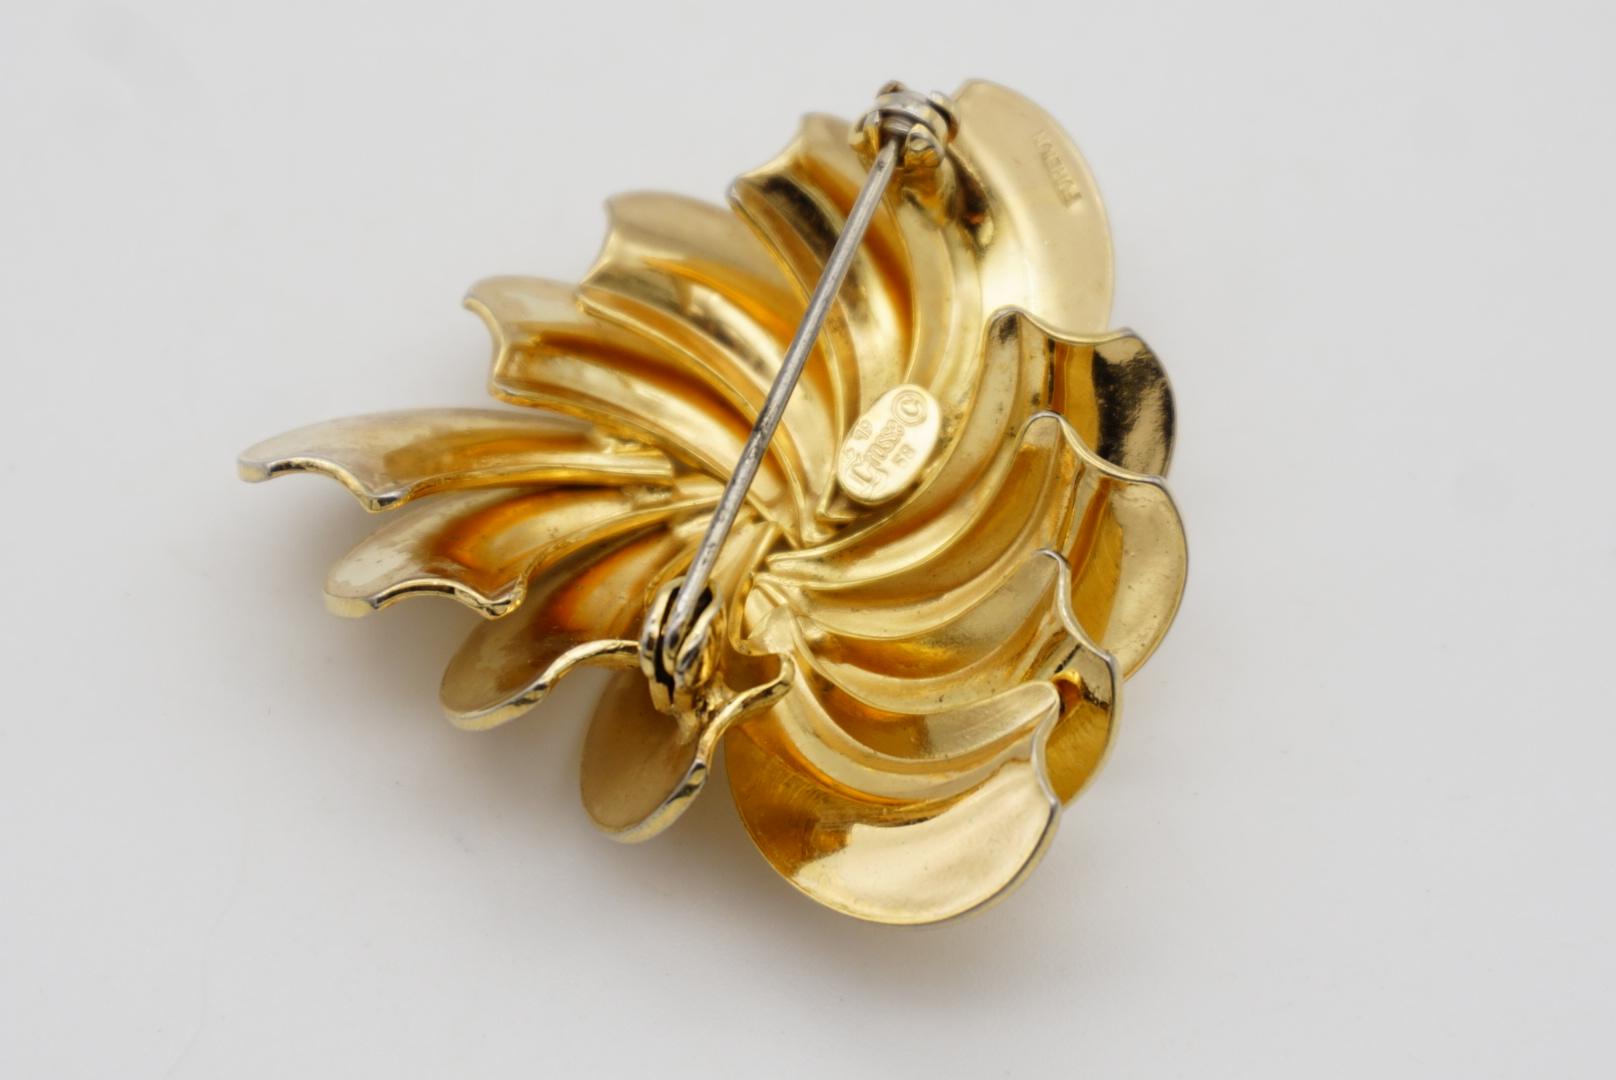 Christian Dior GROSSE 1958 Vintage Swirl Twist Fan Blade Triangle Gold Brooch  For Sale 6